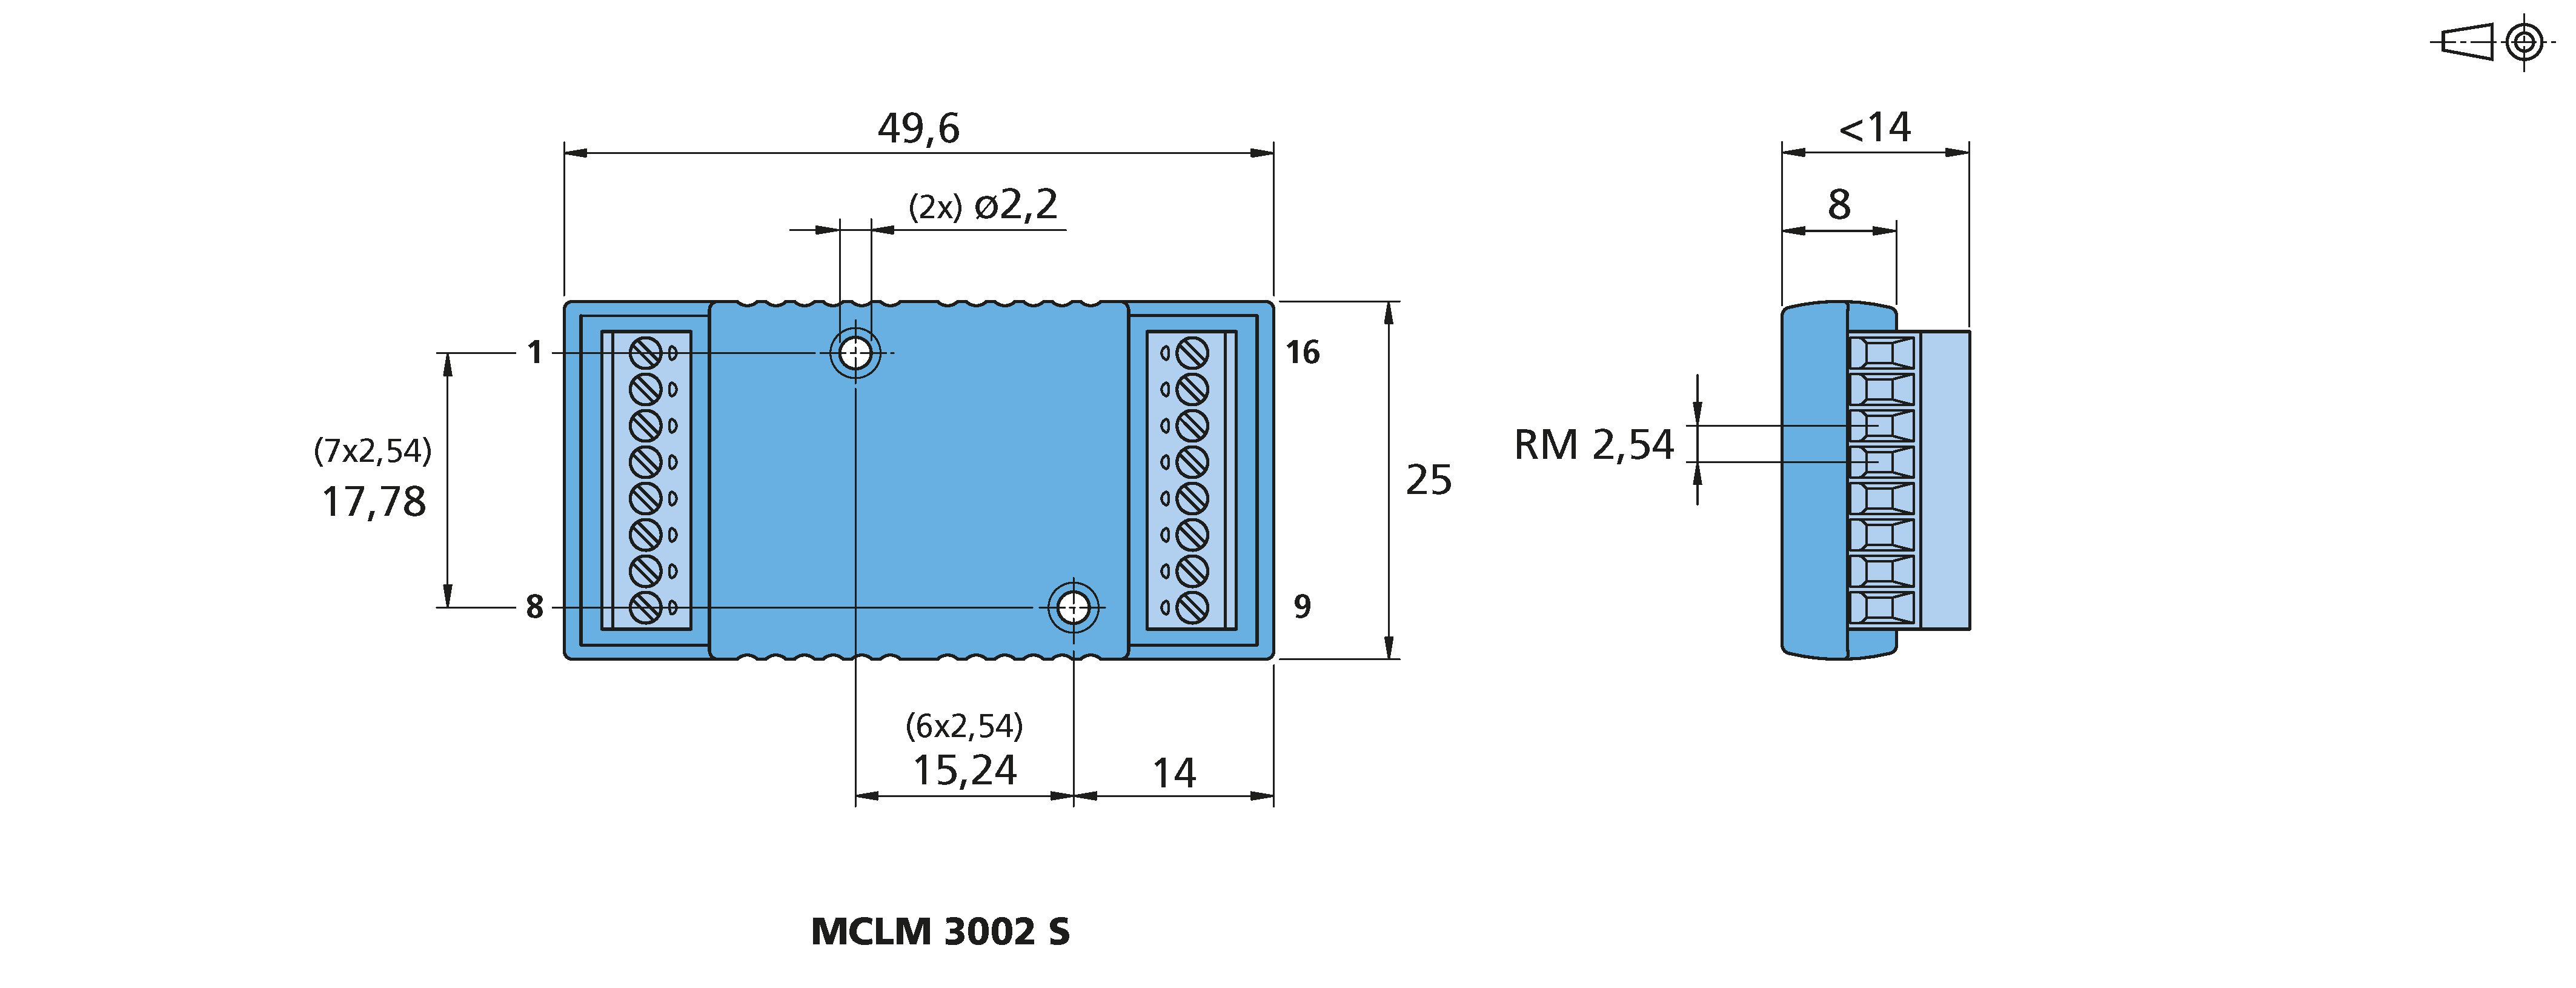 ドライブエレクトロニクス Series MCLM 3002 S